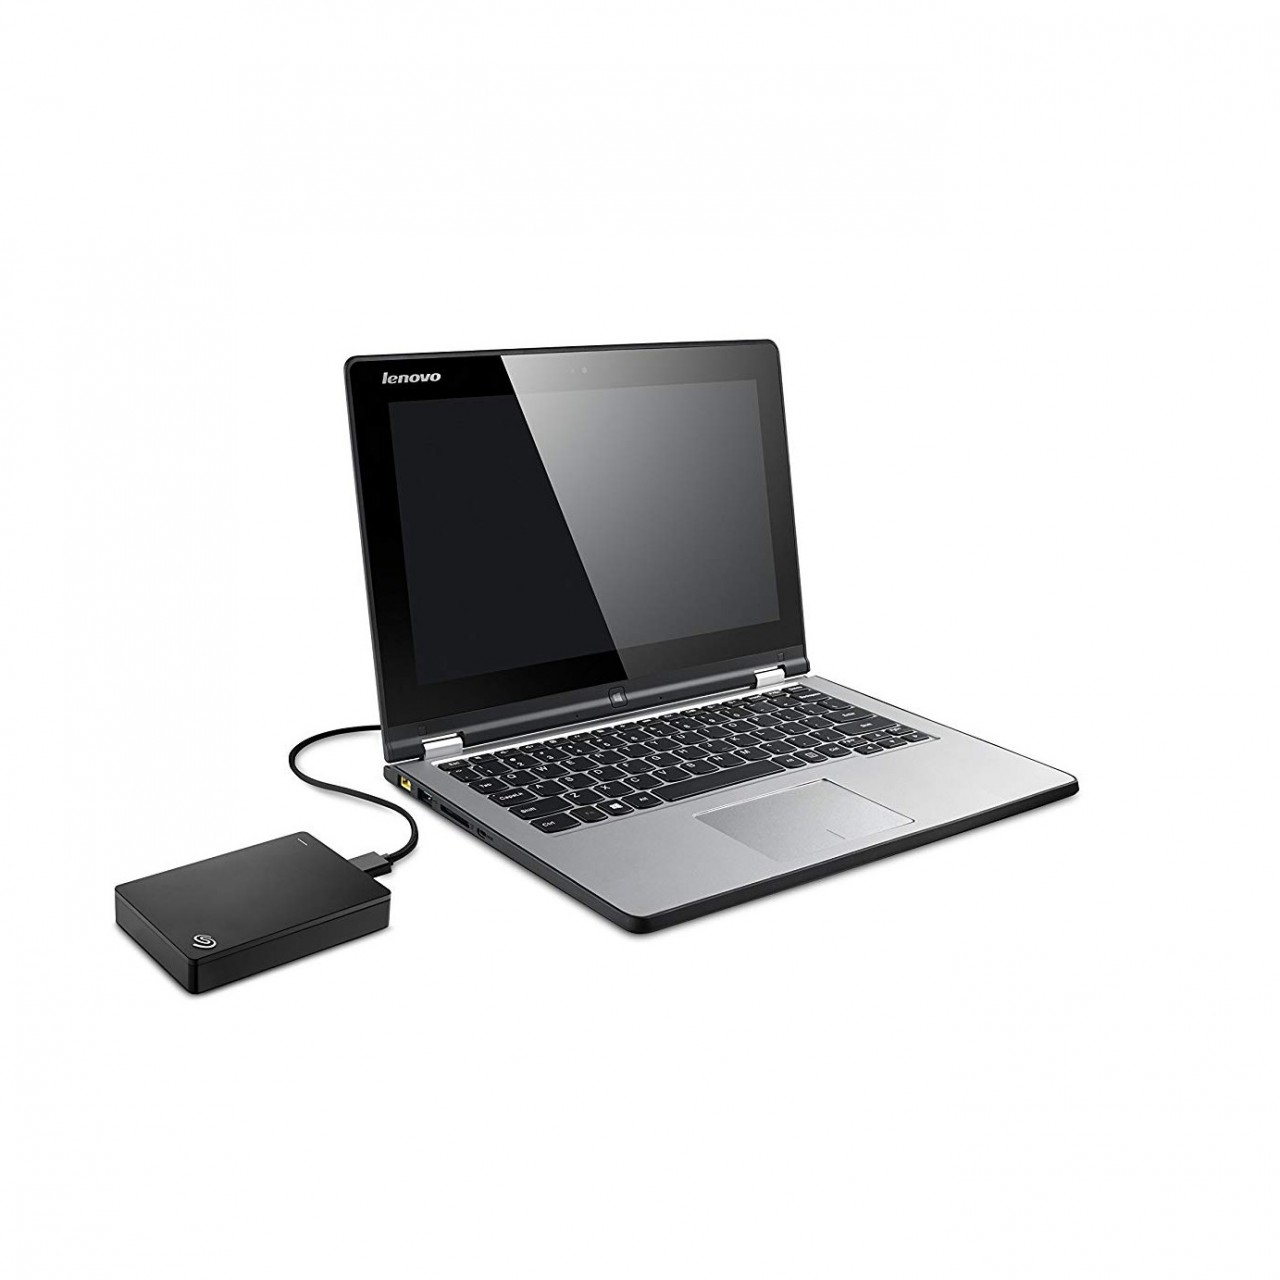 Seagate STDR4000100 Backup Plus Hub External Hard Drive - 4 TB